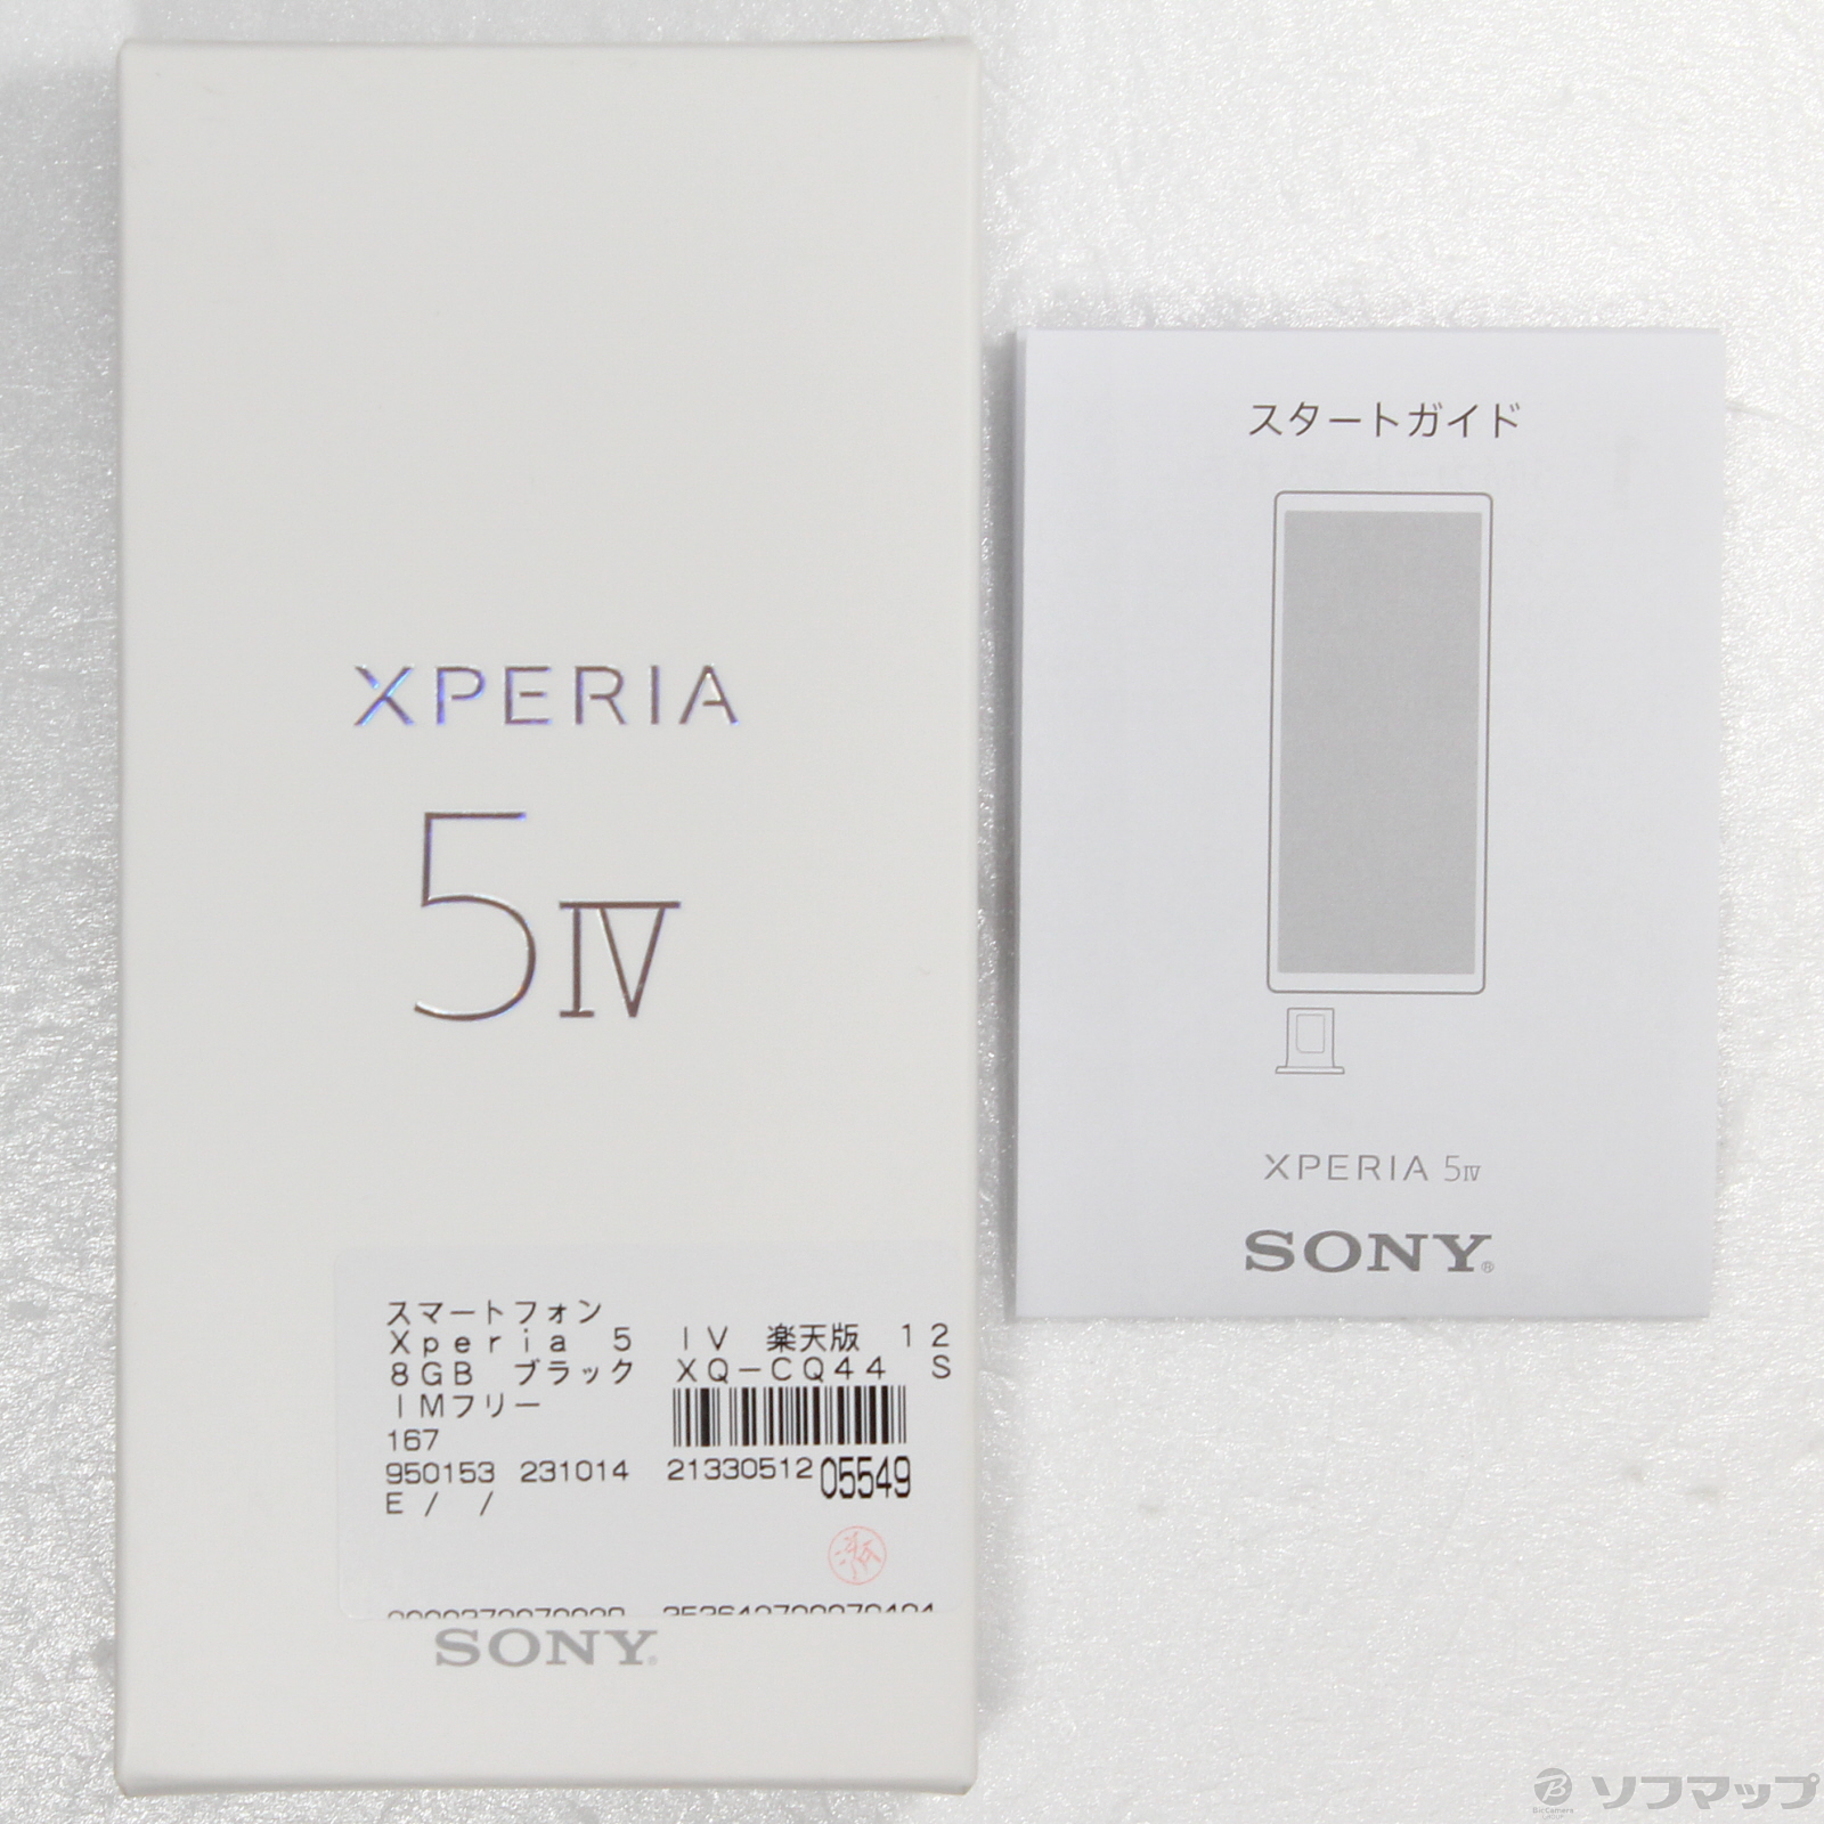 Xperia 5 ⅳ 楽天版 SIMフリー 【値下げ】 - 静岡県の携帯電話/スマホ